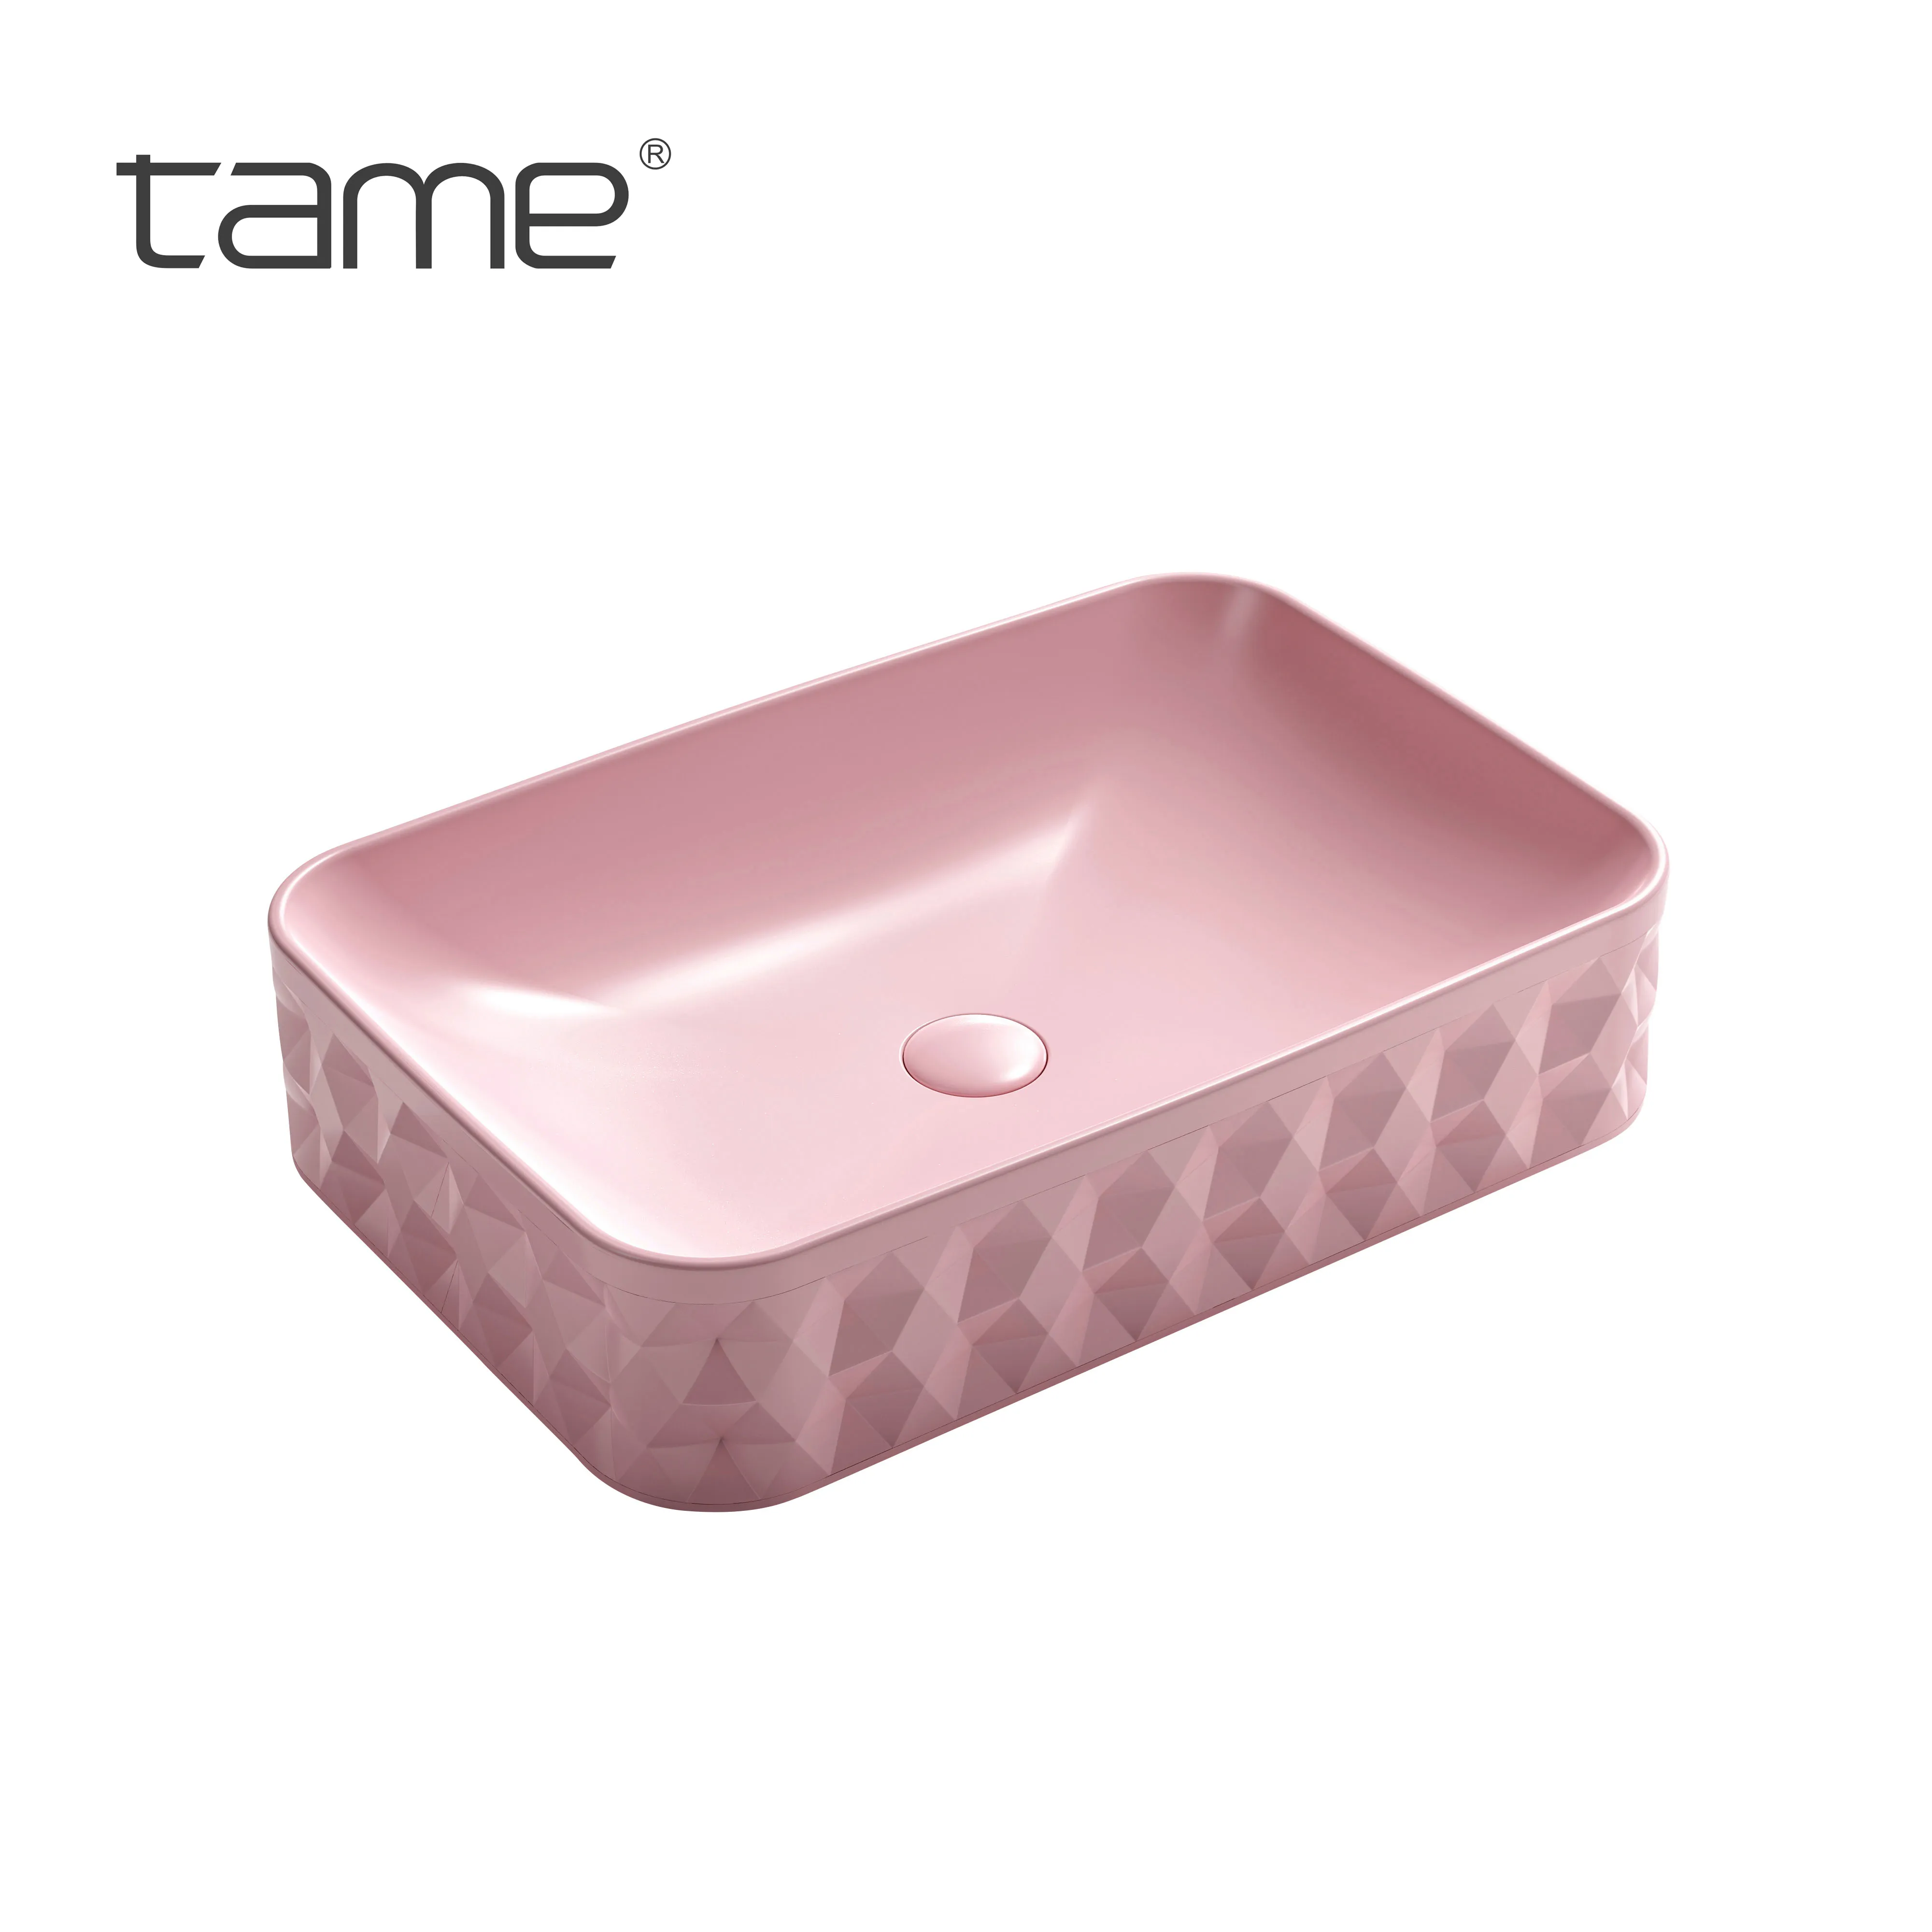 Addomesticato PZ8531-P14 Chaozhou ceramica rosa bancone lavabo lavabo Art lavabo per Hotel appartamento bagno